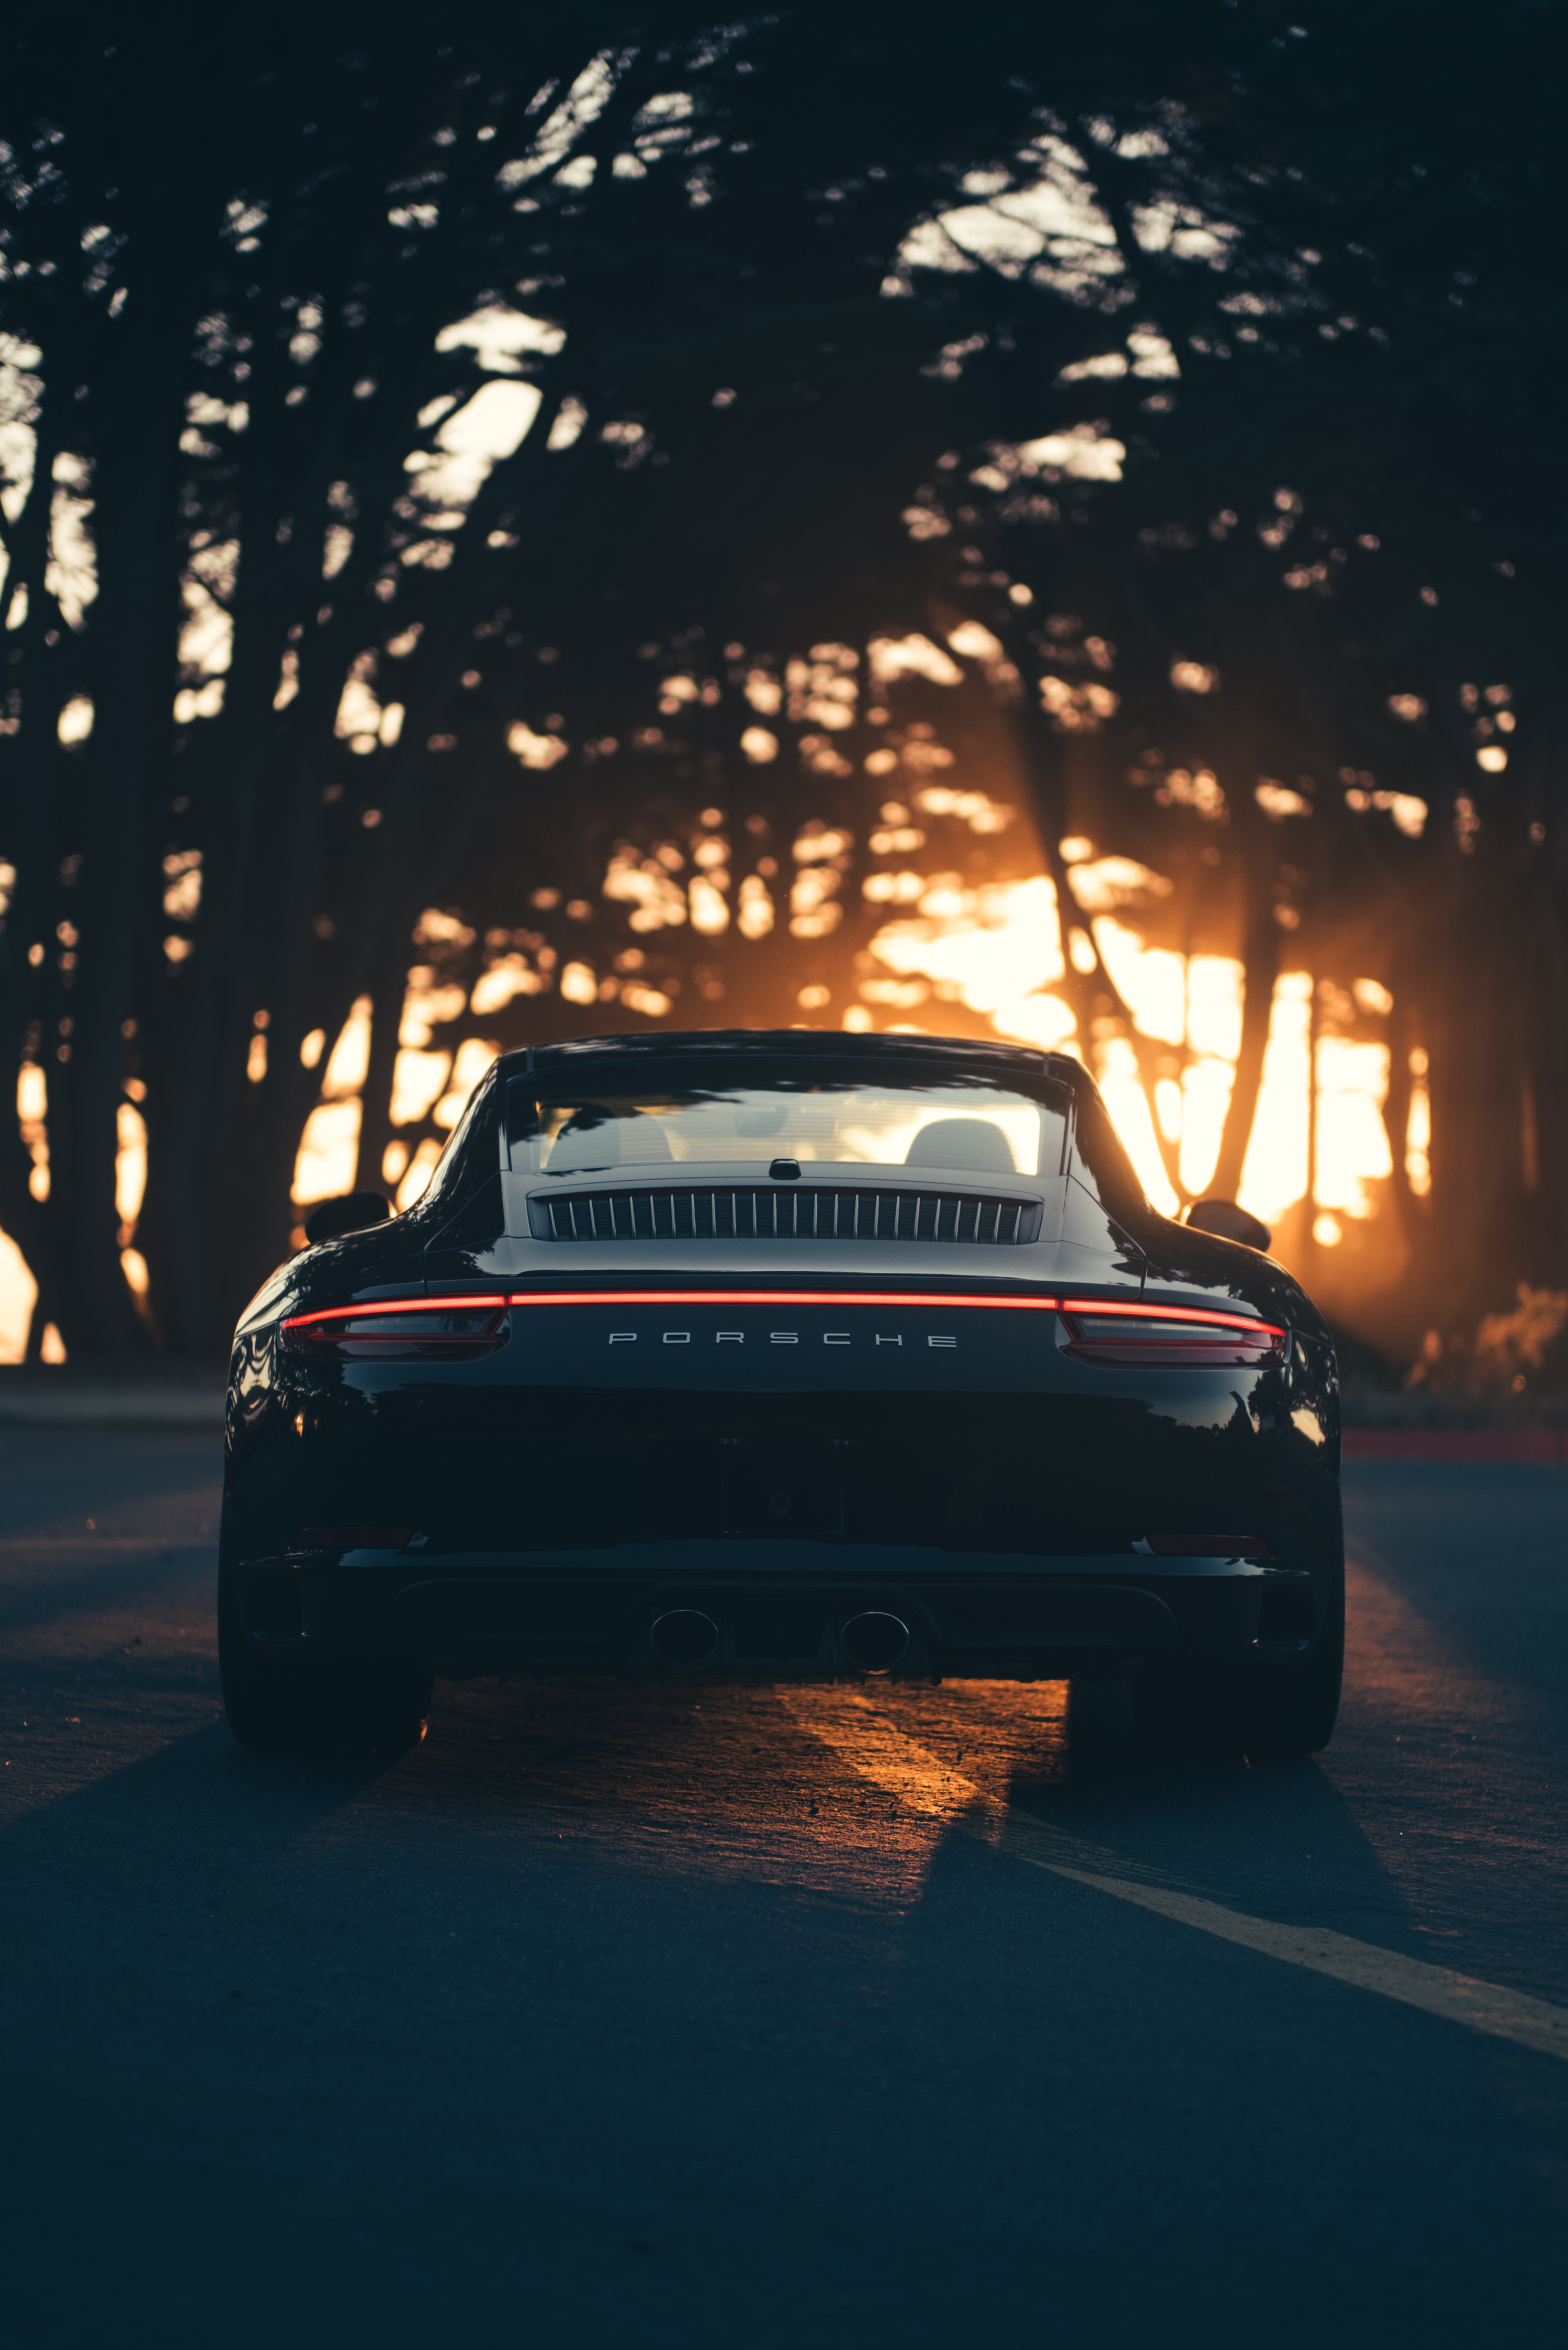 High Definition Porsche background